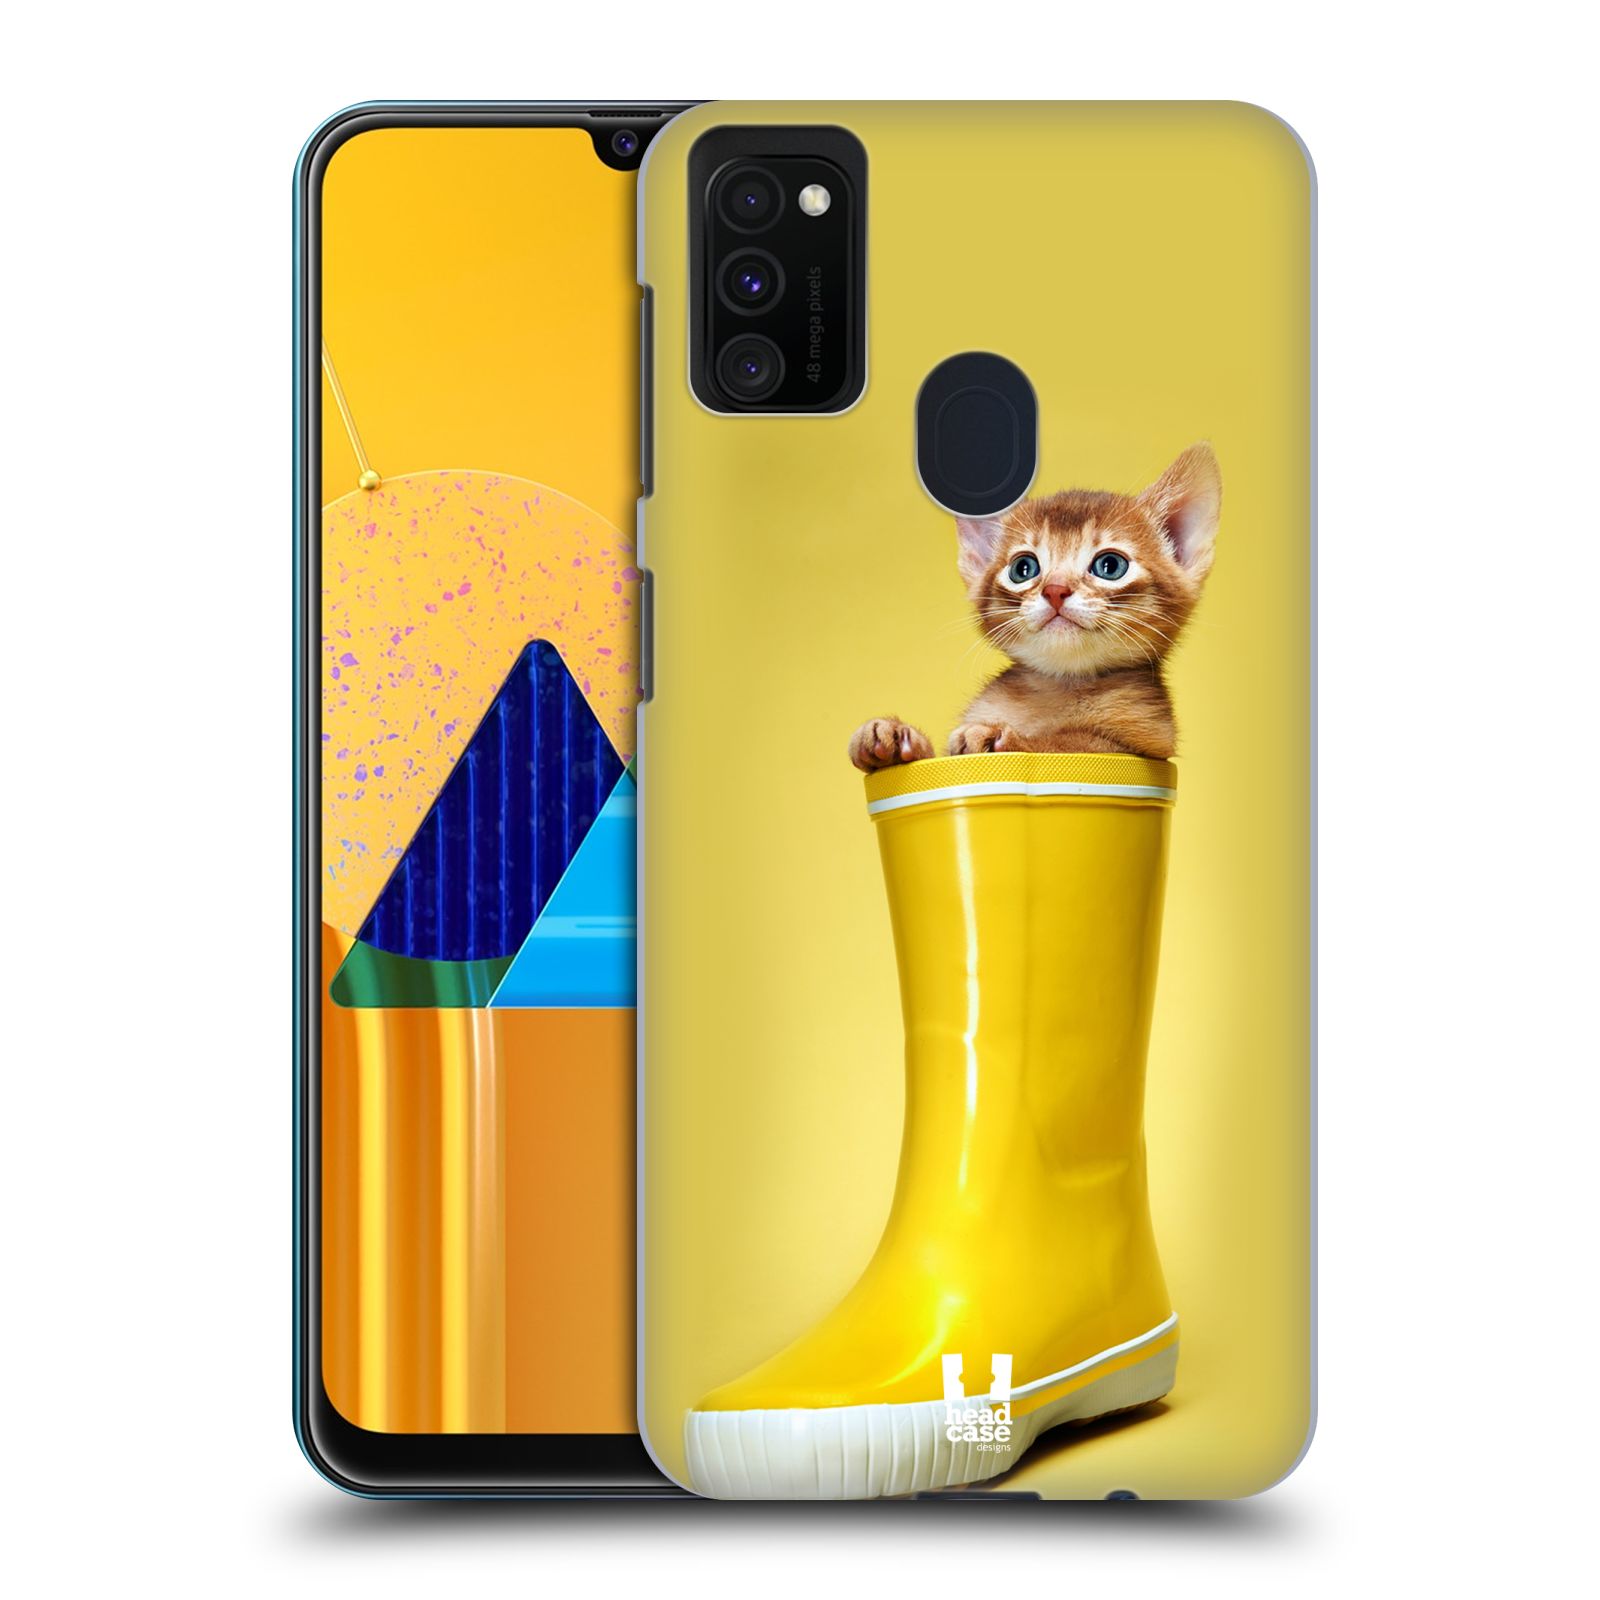 Plastový obal HEAD CASE na mobil Samsung Galaxy M30s vzor Legrační zvířátka kotě v botě žlutá